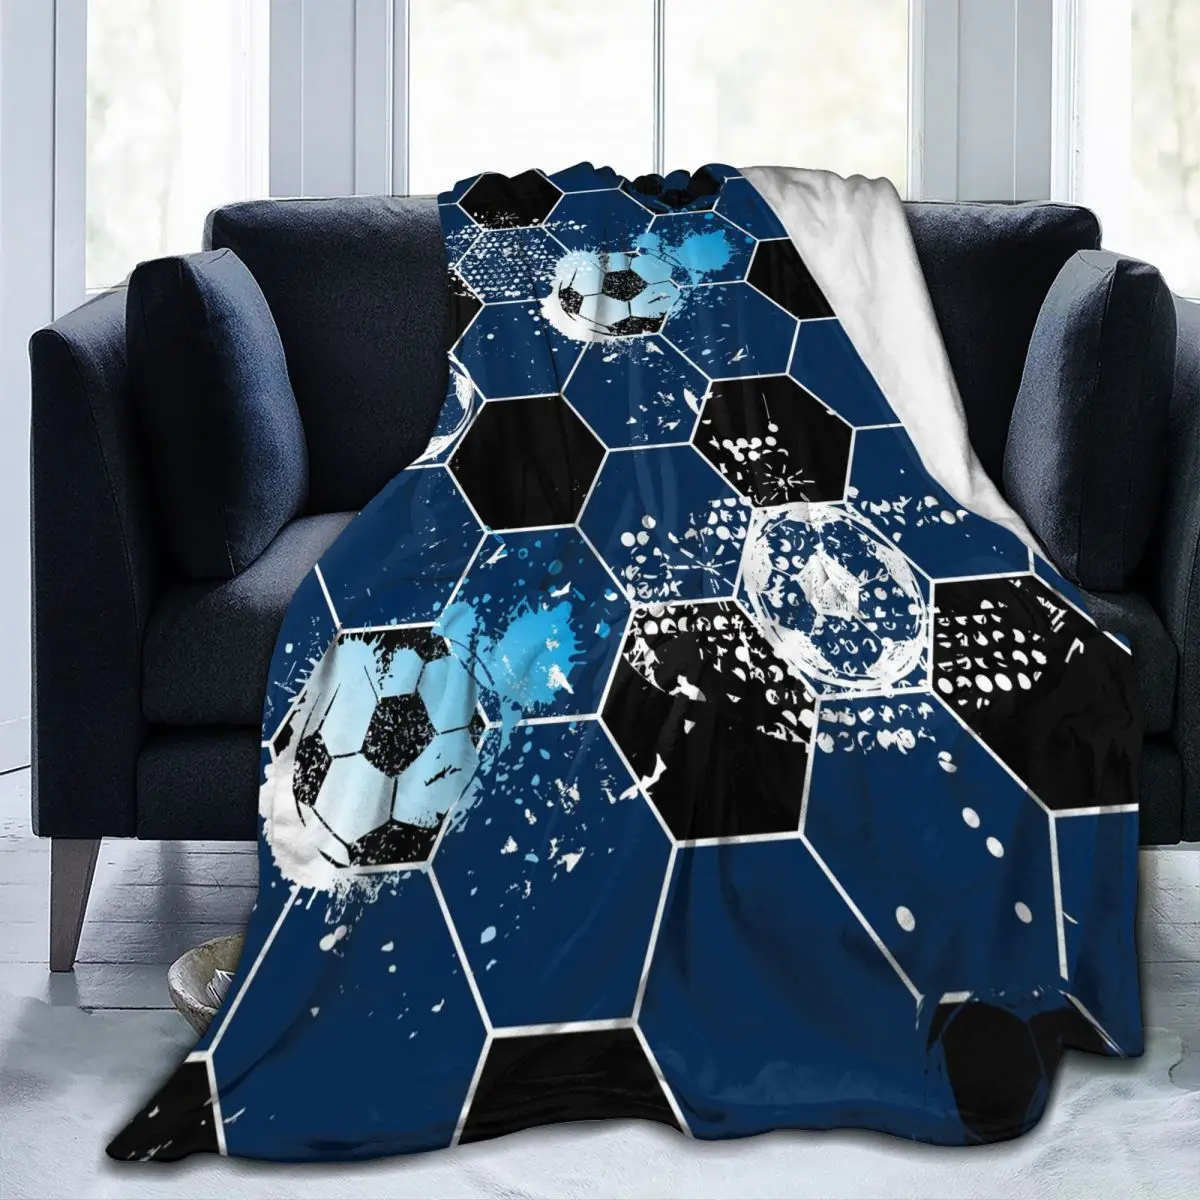 

Фланелевое Одеяло с абстрактным изображением футбола, спортивный узор, мягкое тонкое Флисовое одеяло, покрывало для кровати, дивана, домашн...